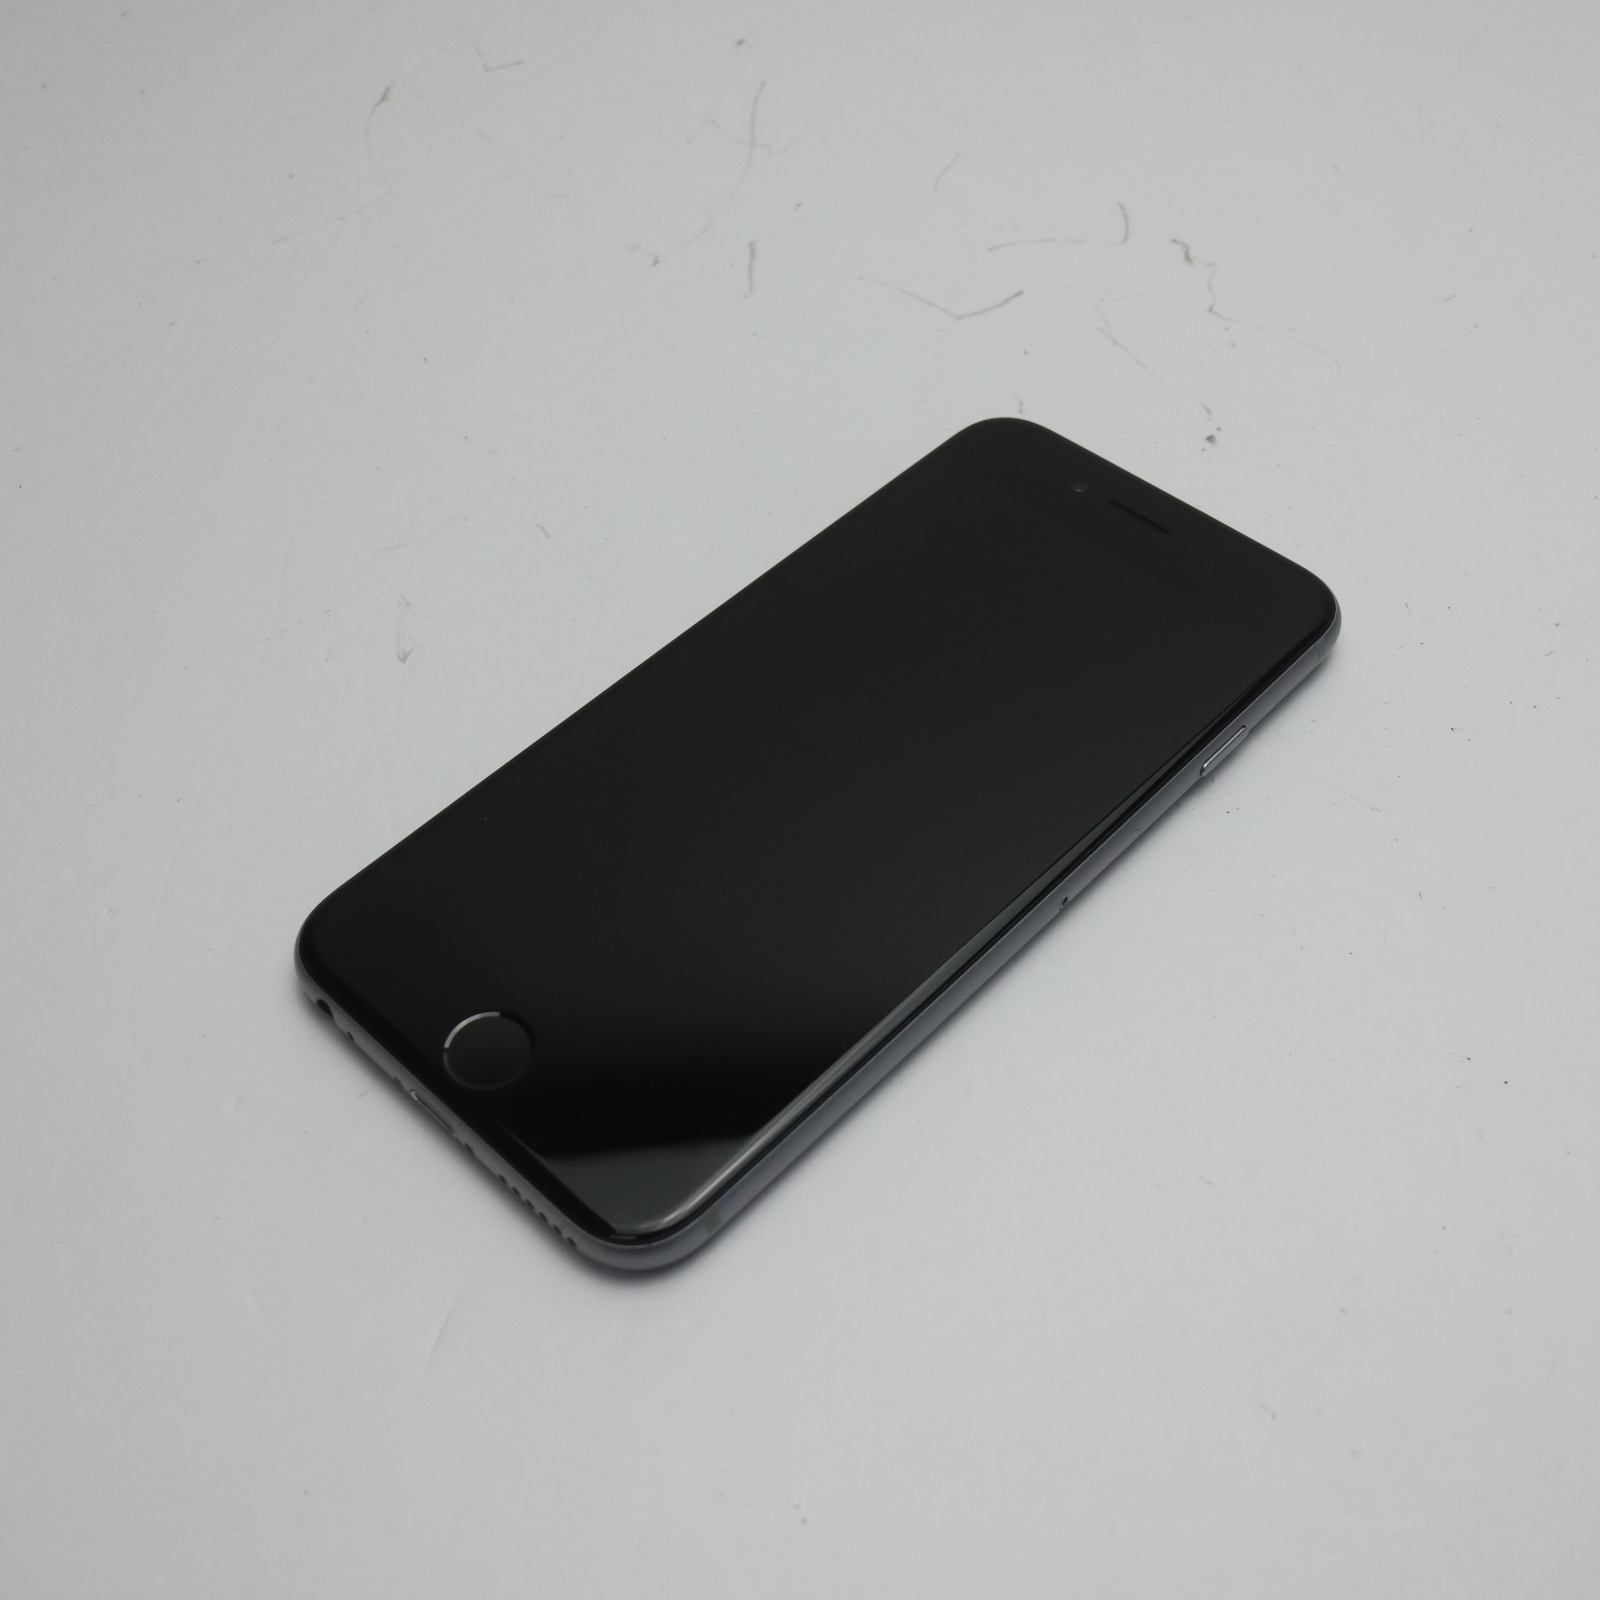 超美品 SOFTBANK iPhone6 128GB スペースグレイ 即日発送 スマホ Apple 